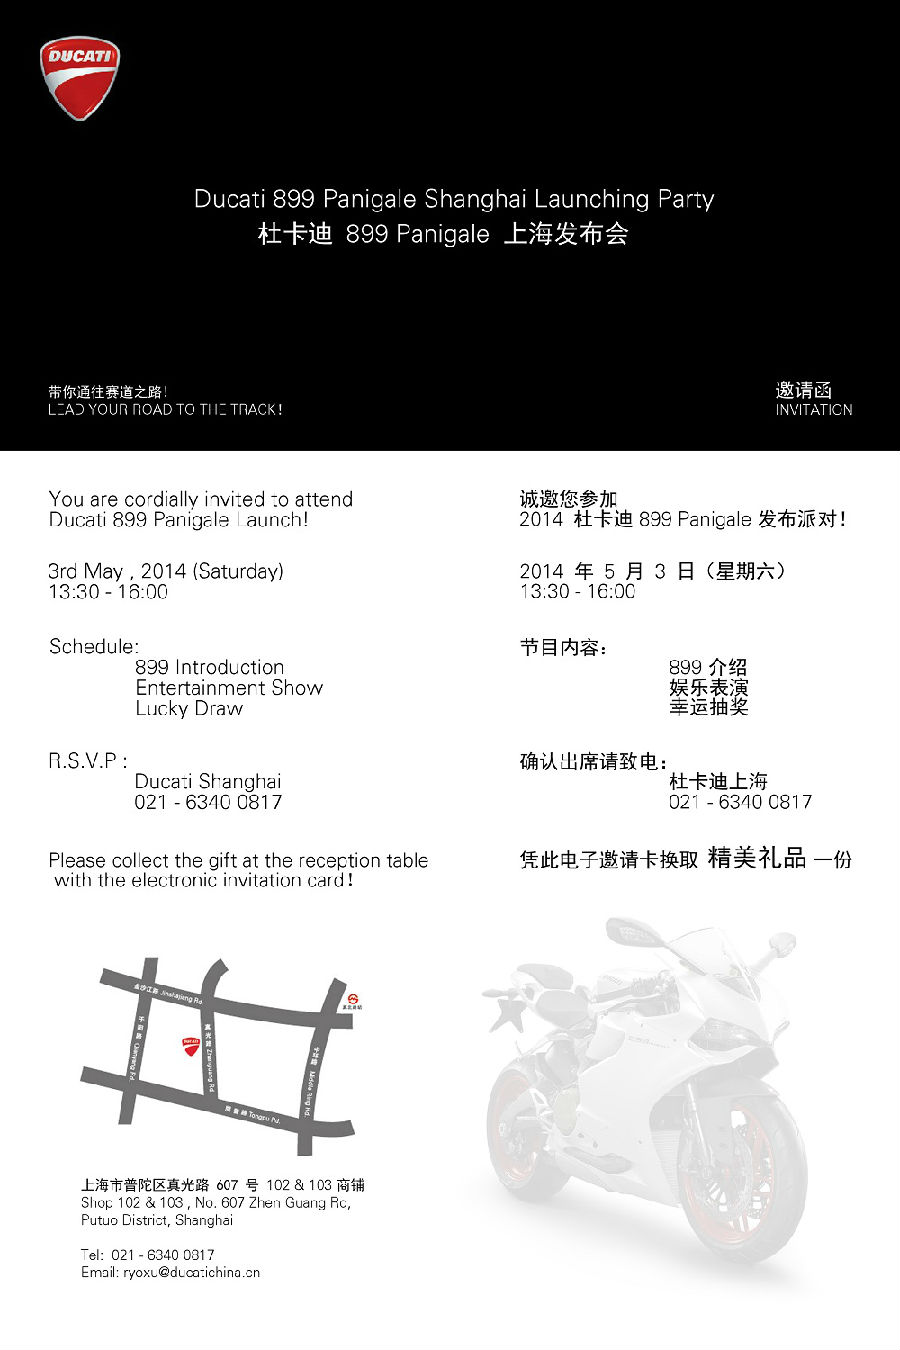 杜卡迪 899 Panigale 上海发布派对 即将开展！